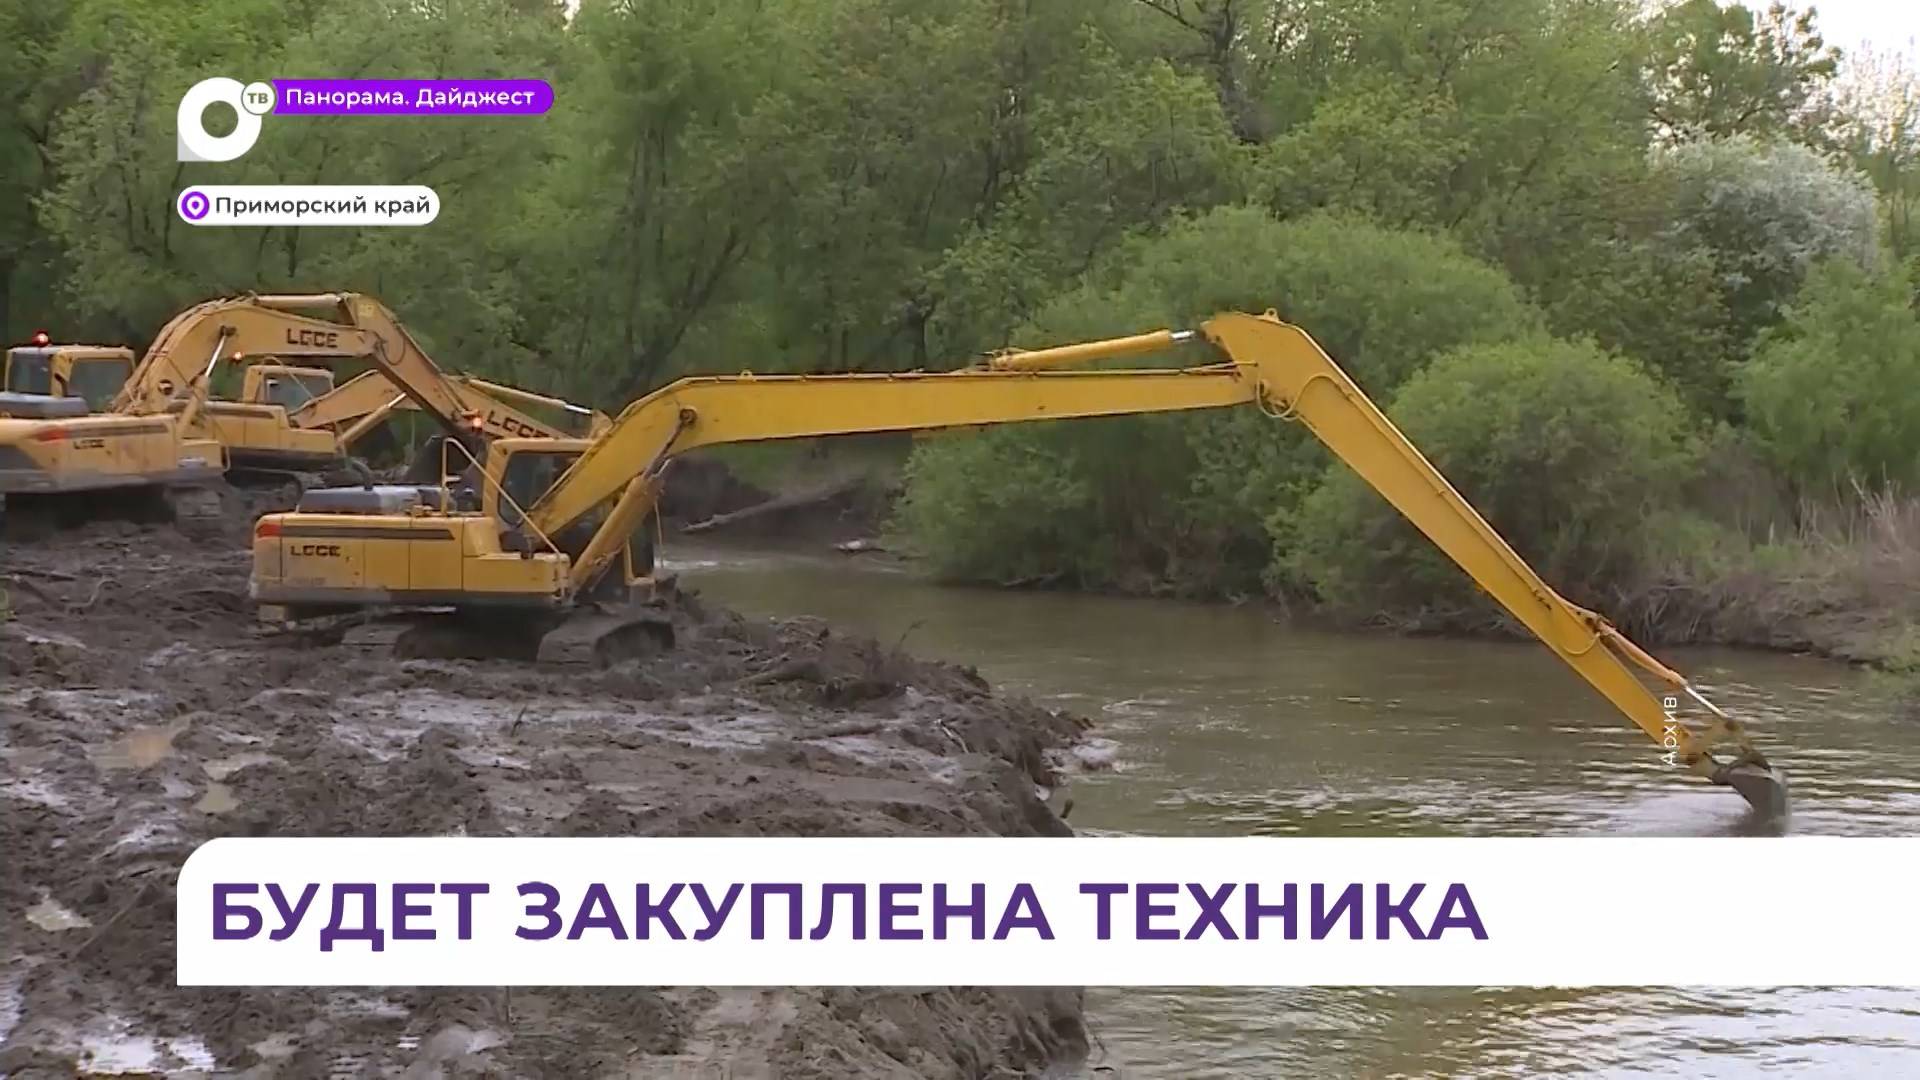 Олег Кожемяко: работа по расчистке и углублению русел рек продолжится